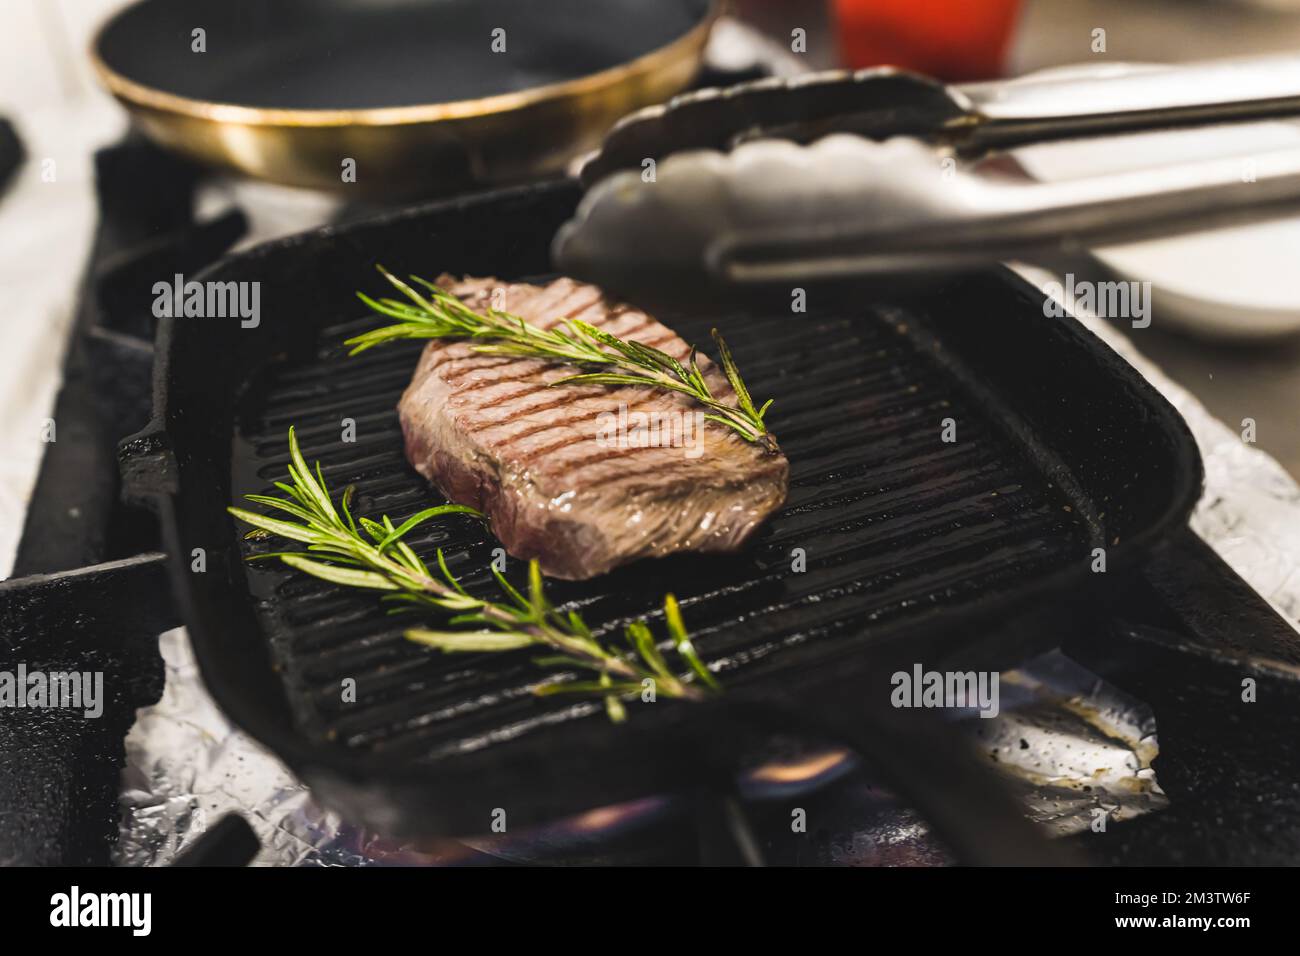 Bistecca alla griglia con rosmarino. Ricetta per una gustosa bistecca di lombo a casa utilizzando pochi ingredienti come le erbe. Foto di alta qualità Foto Stock